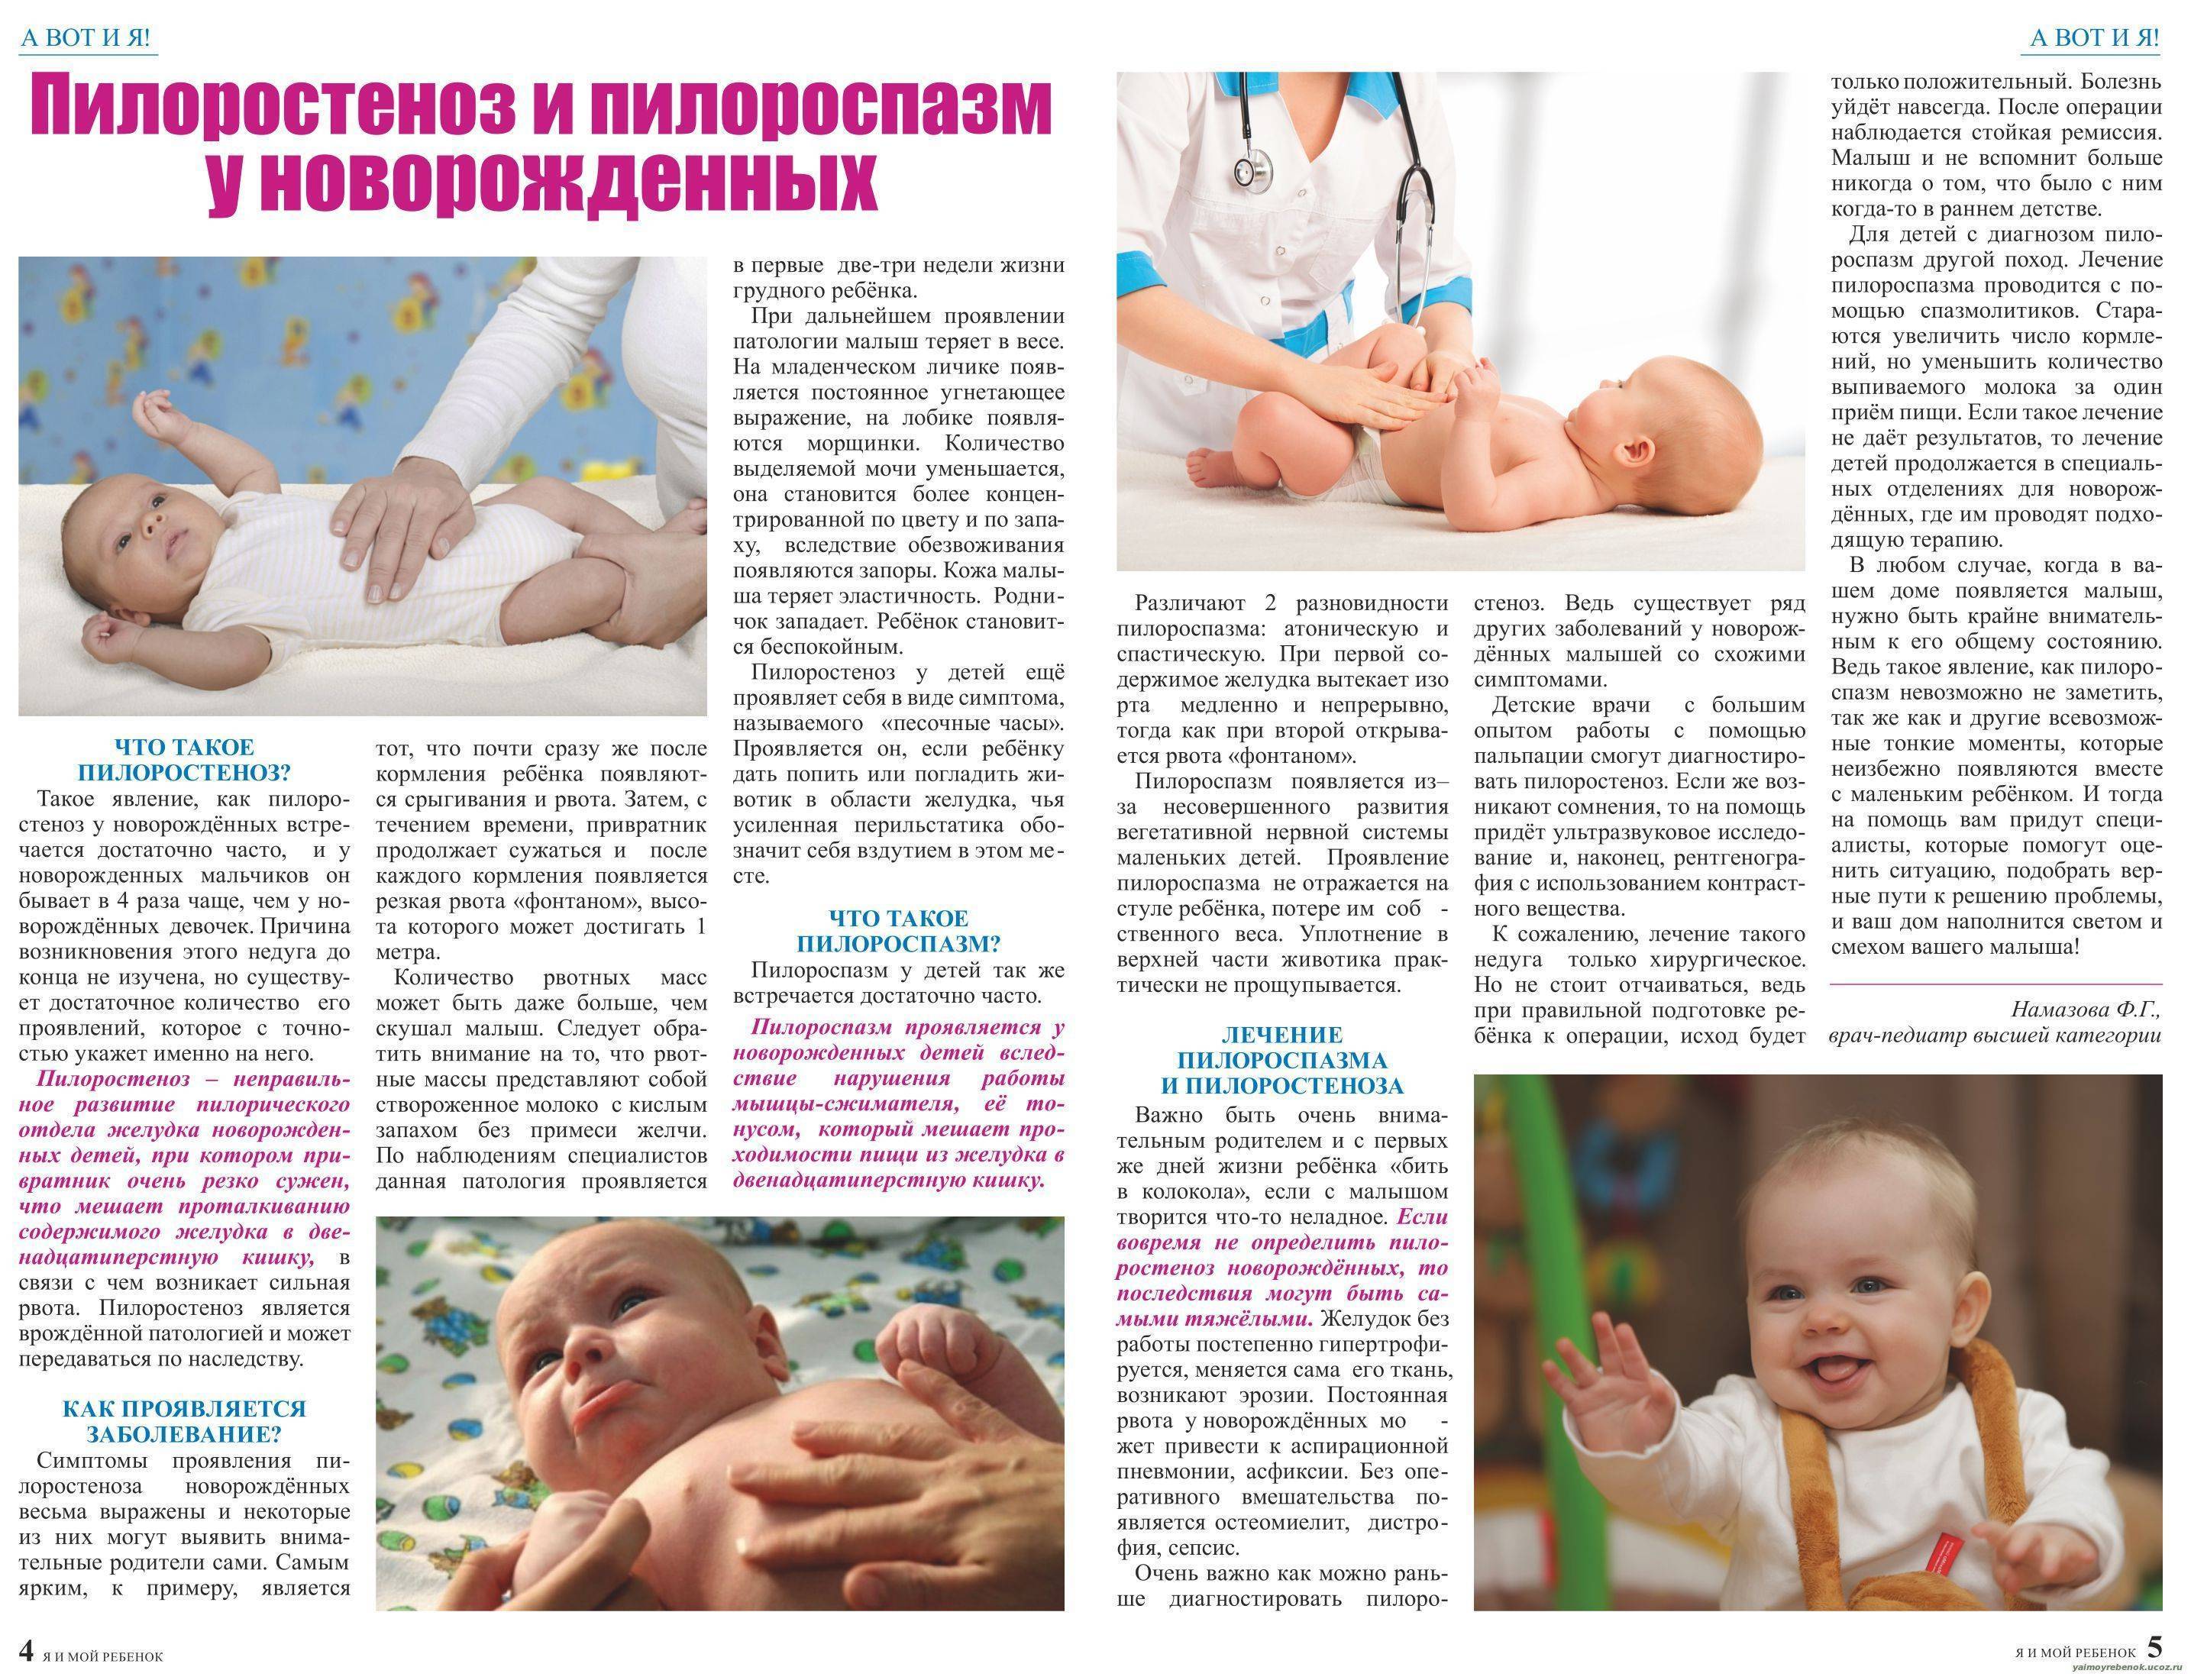 Симптоматика пилороспазма и пилоростеноза у новорожденных и грудных детей, диагностика и лечение